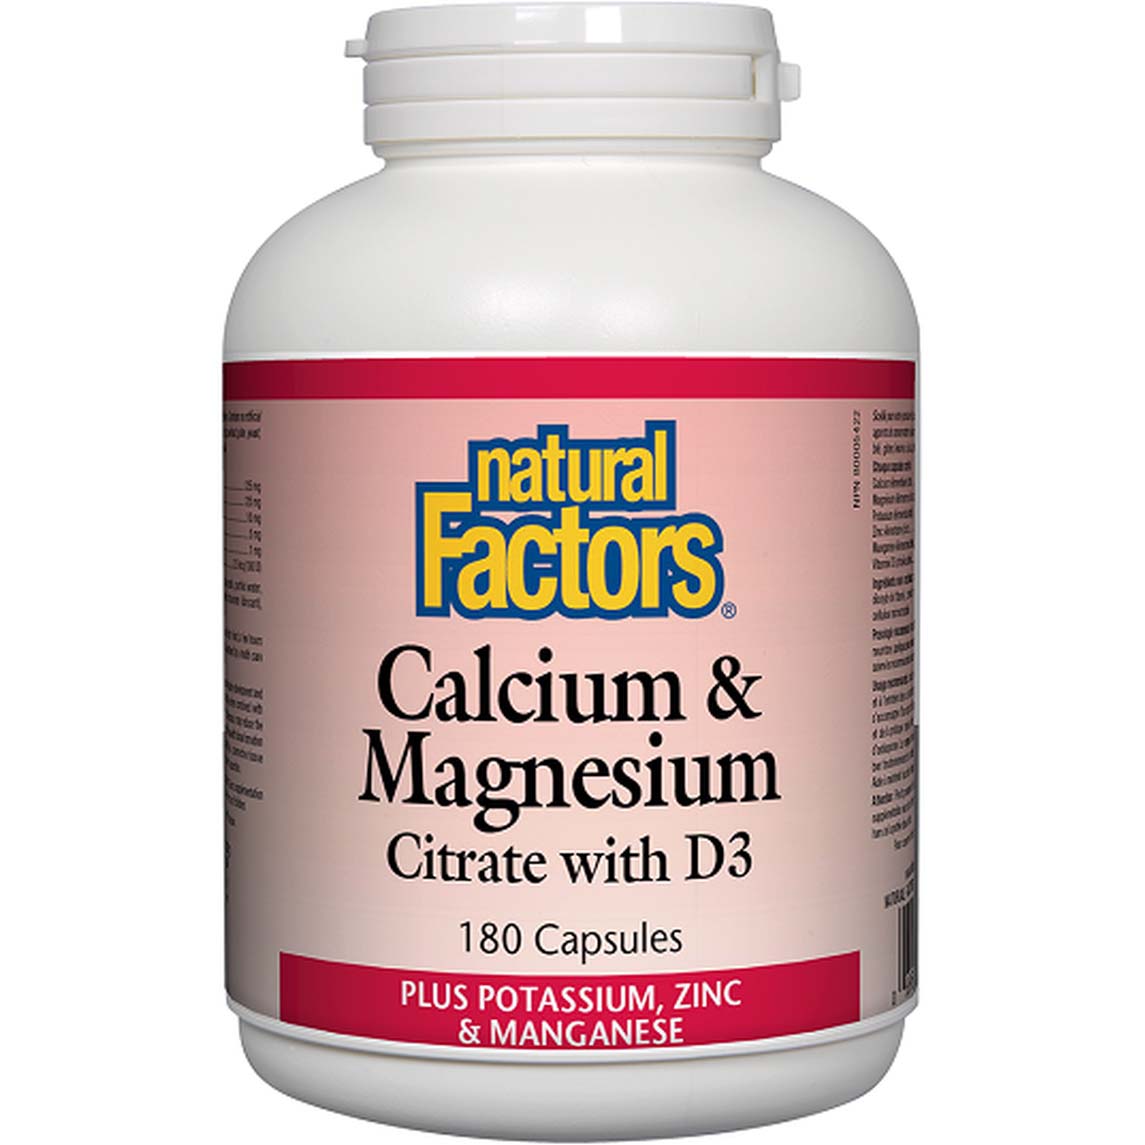 Natural Factors Calcium & Magnesium Citrate with D3 Plus Potassium, Zinc & Manganese 180 Capsules